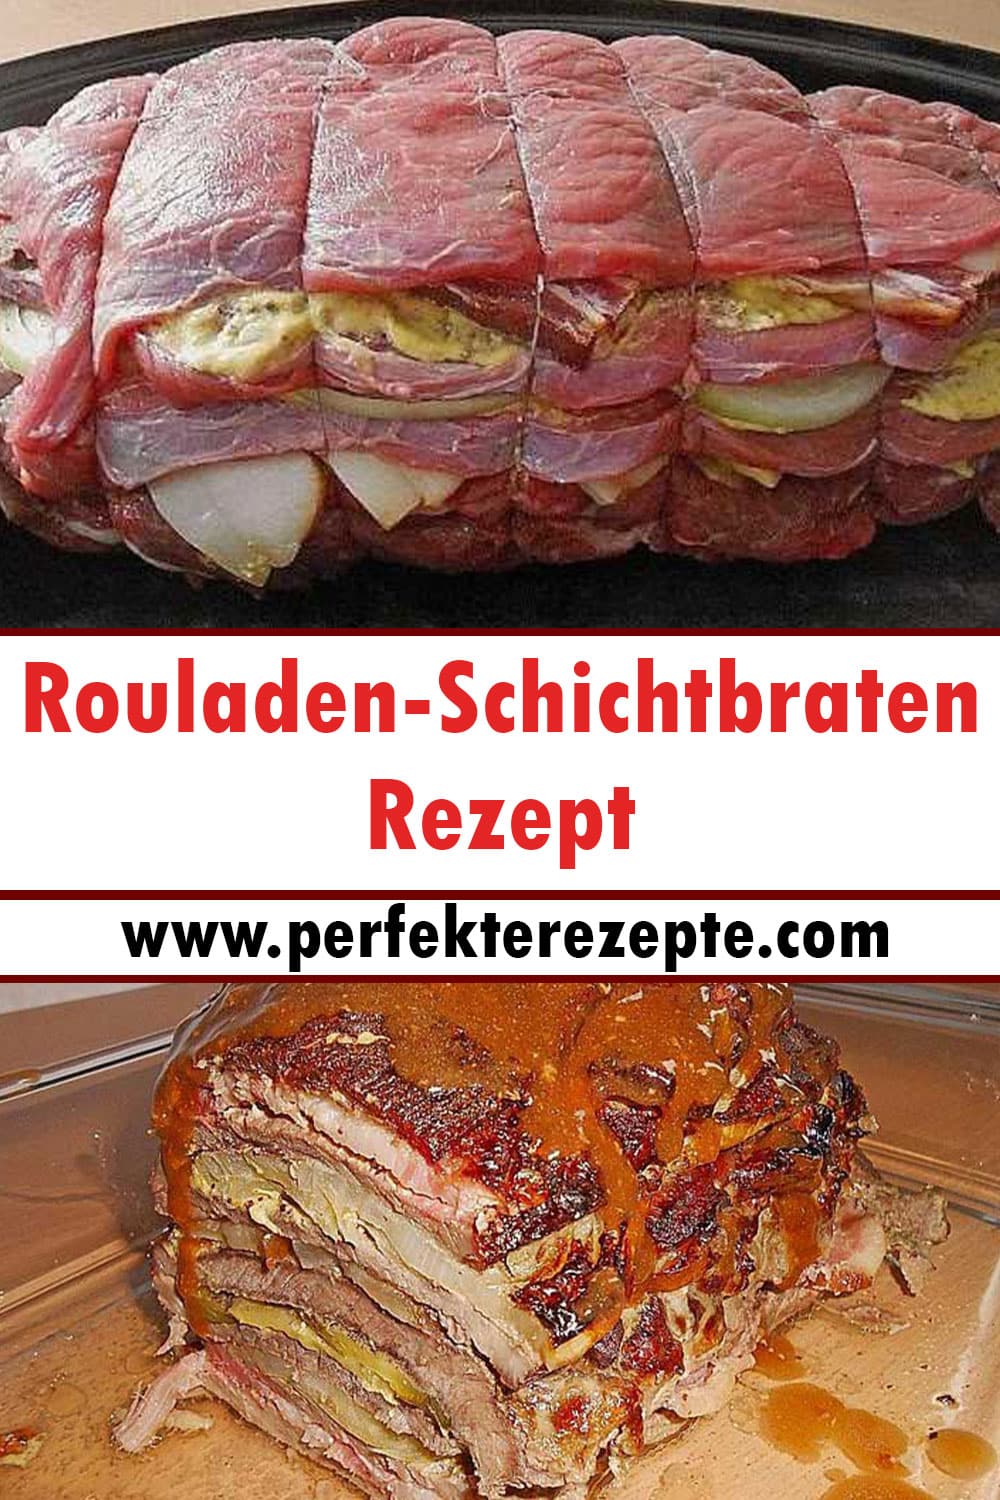 Rouladen-Schichtbraten Rezept